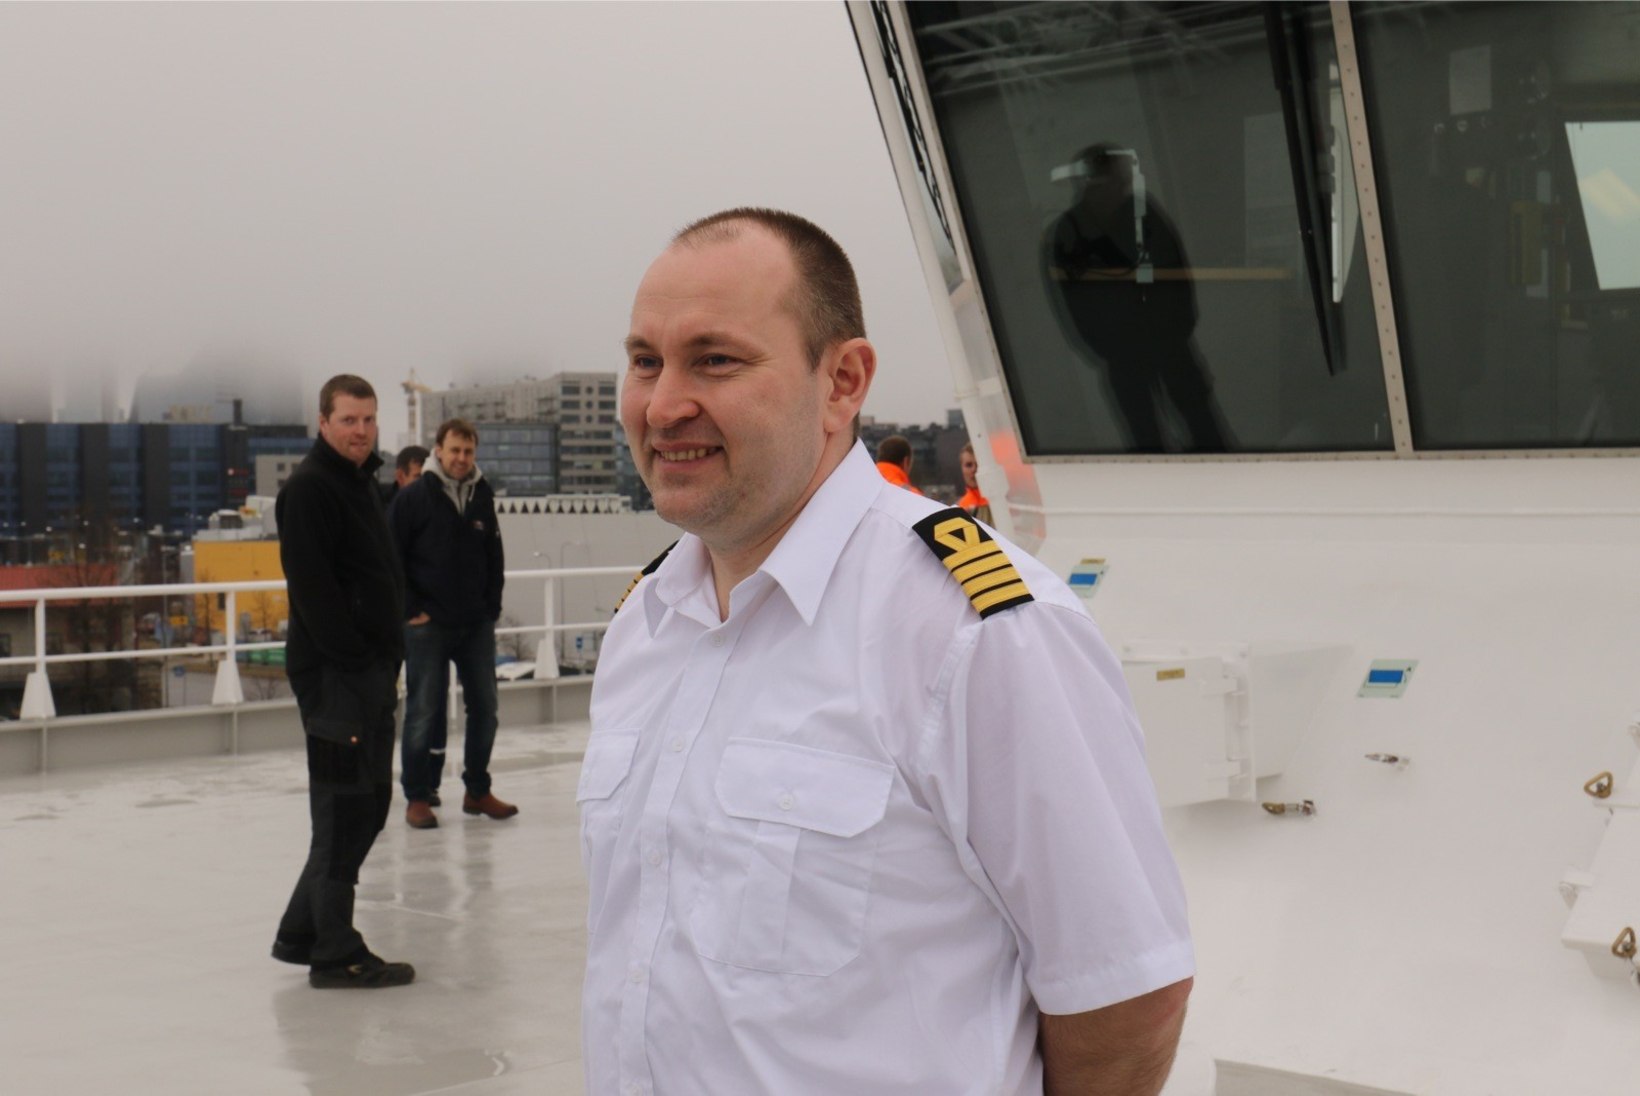 ÕHTULEHE VIDEO JA GALERII | Parvlaev Piret jõudis koju, kuid vajab juba esimesi parandustöid